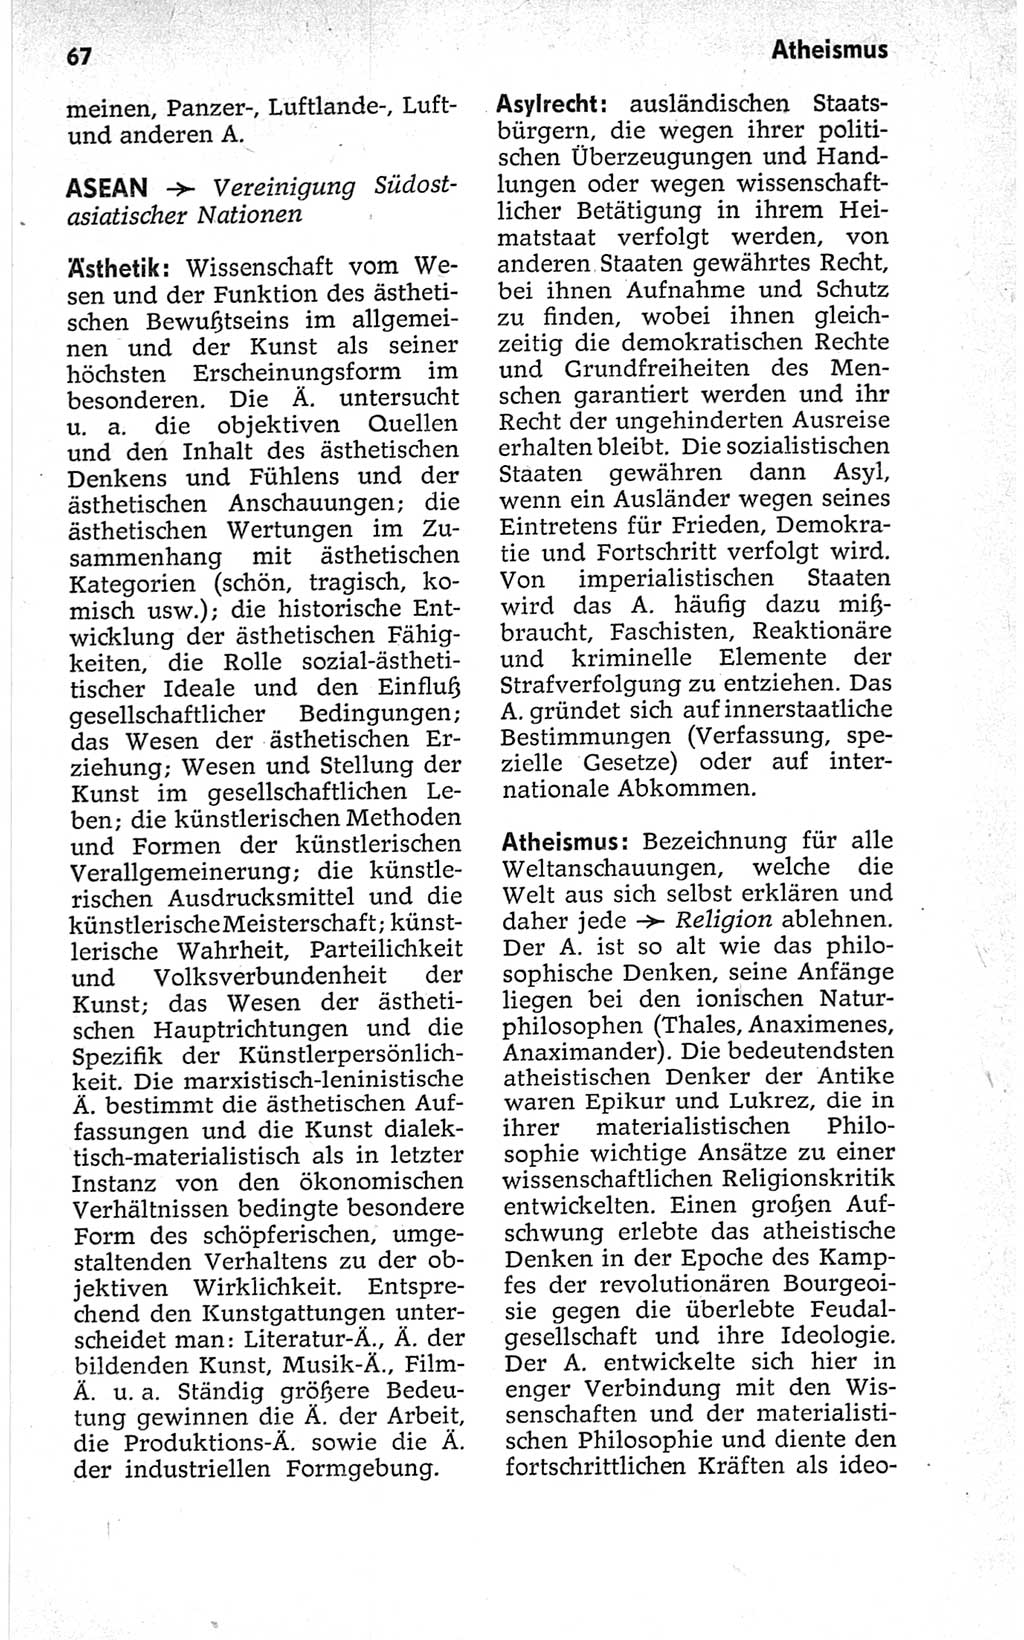 Kleines politisches Wörterbuch [Deutsche Demokratische Republik (DDR)] 1967, Seite 67 (Kl. pol. Wb. DDR 1967, S. 67)